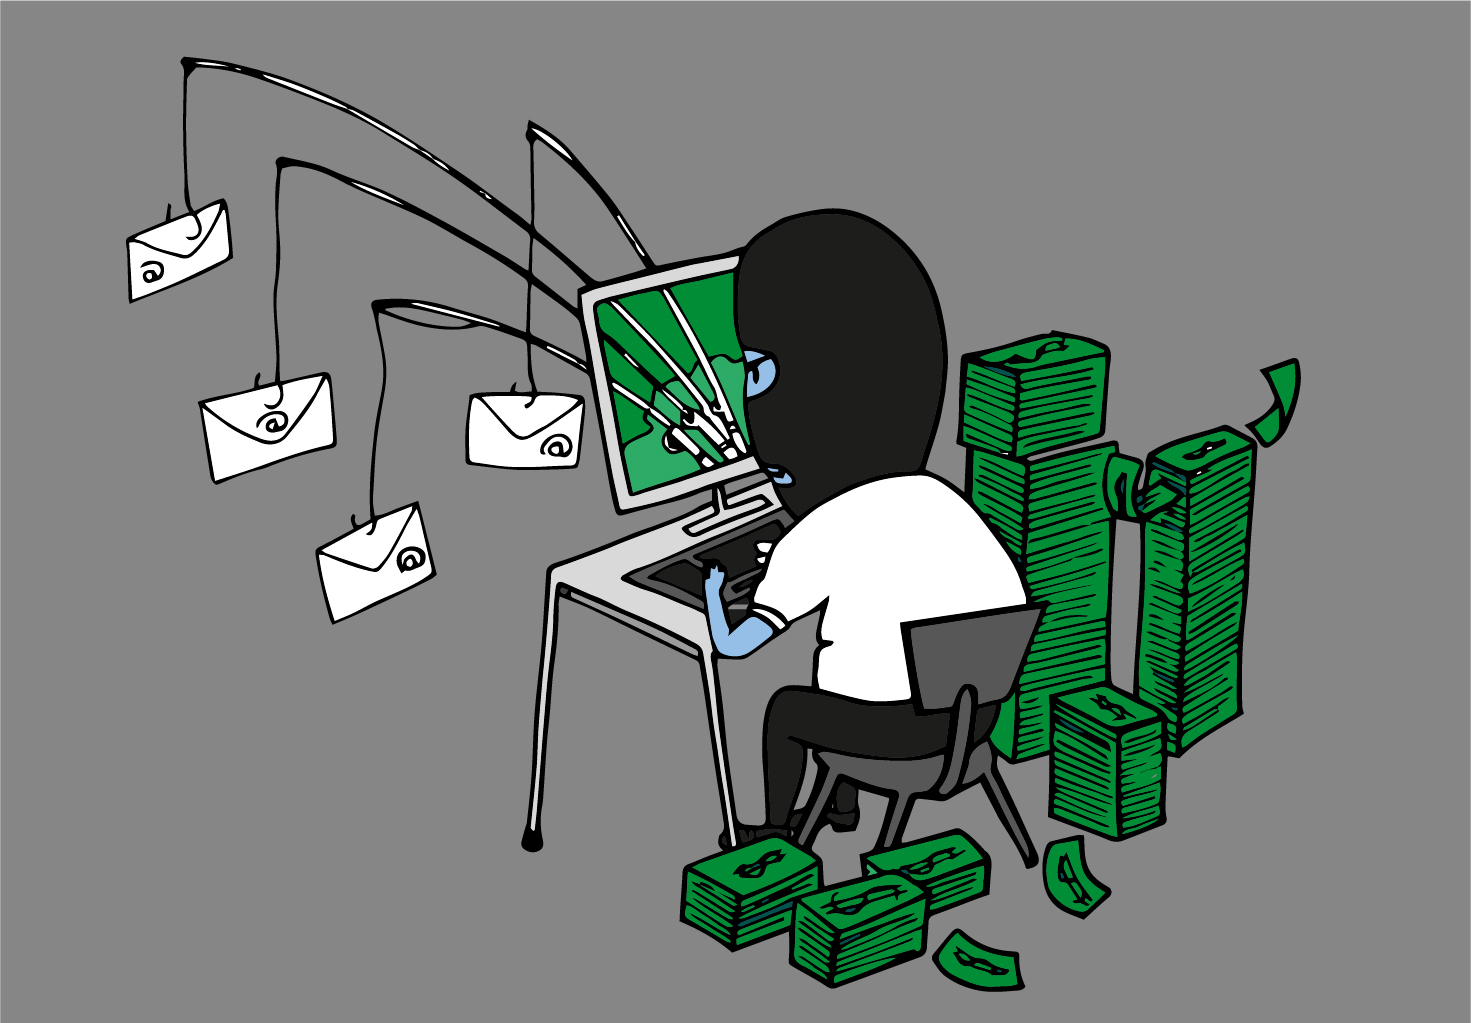 Illustratie van hacker die geld binnenhaalt via phishingmails. Door: Evi Penders